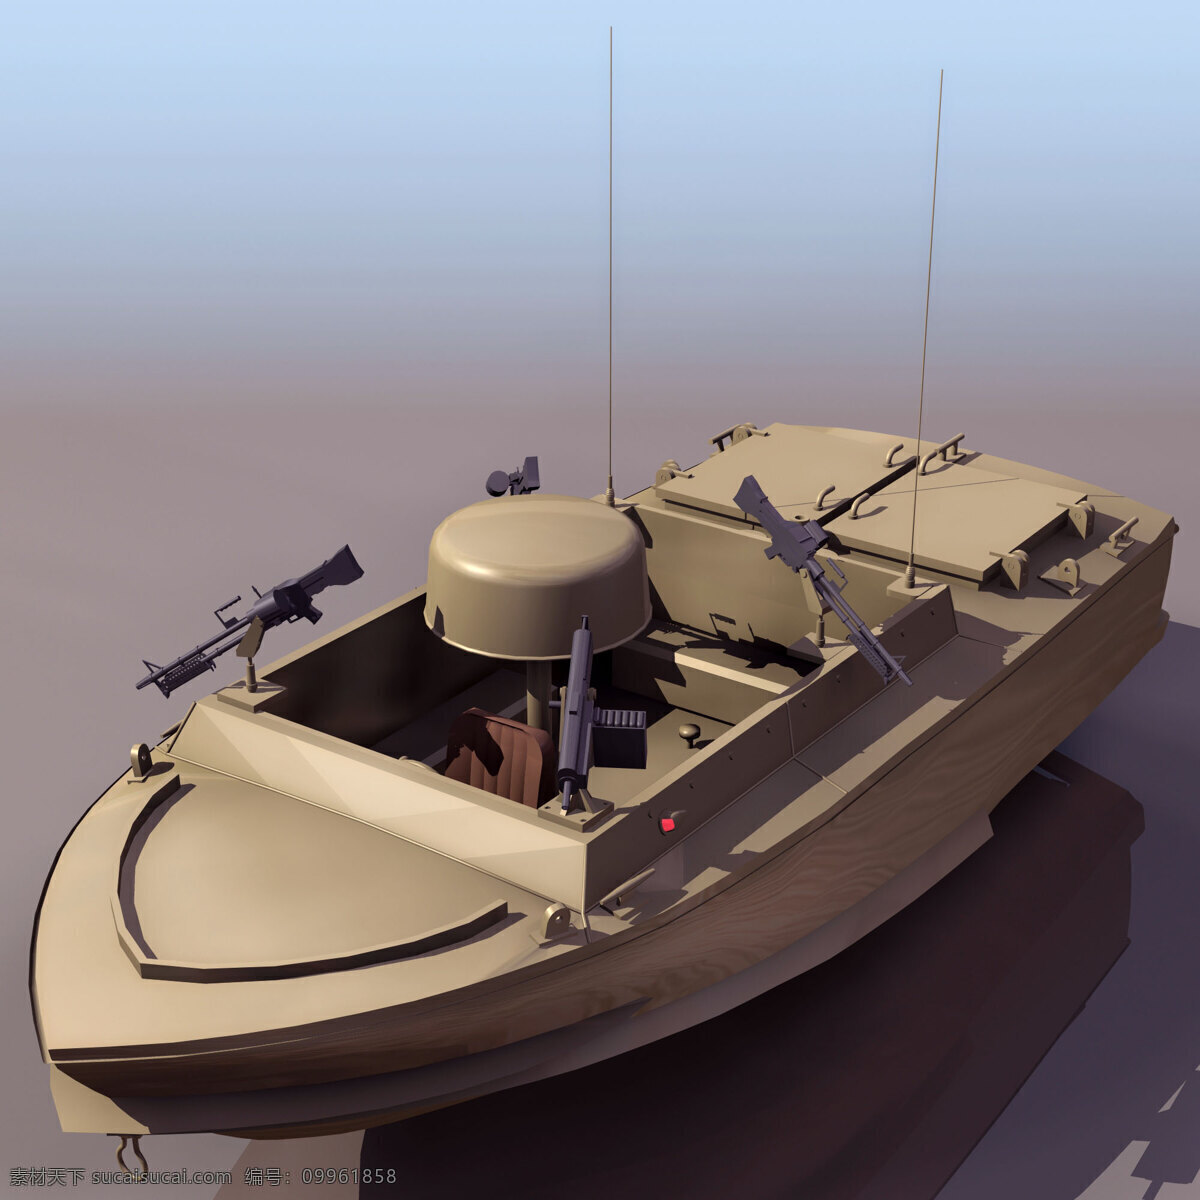 军用 船 模型 lssc 军事模型 军用船 海军武器库 3d模型素材 其他3d模型